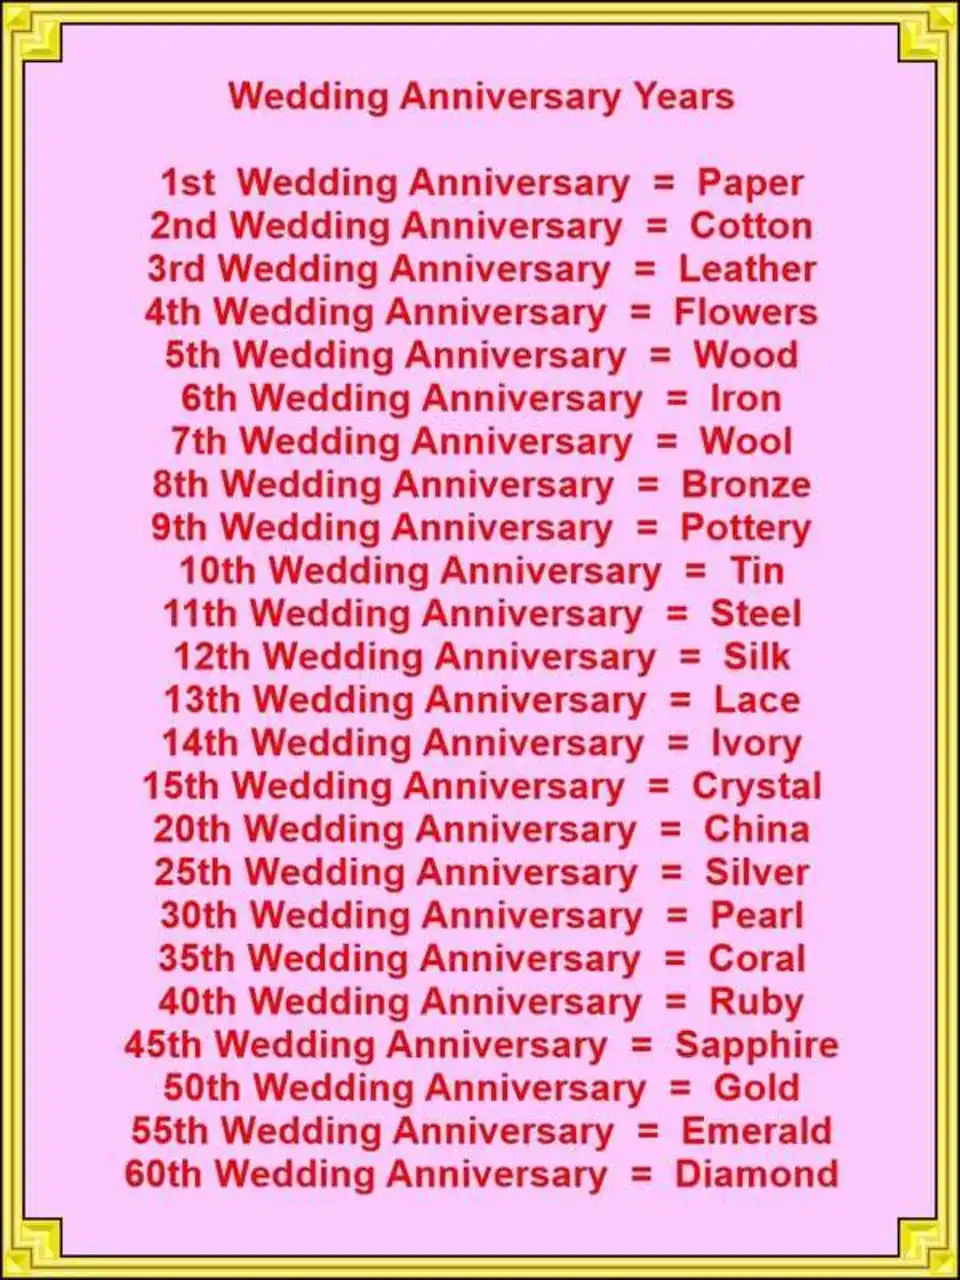 Годовщины свадьбы по годам названия